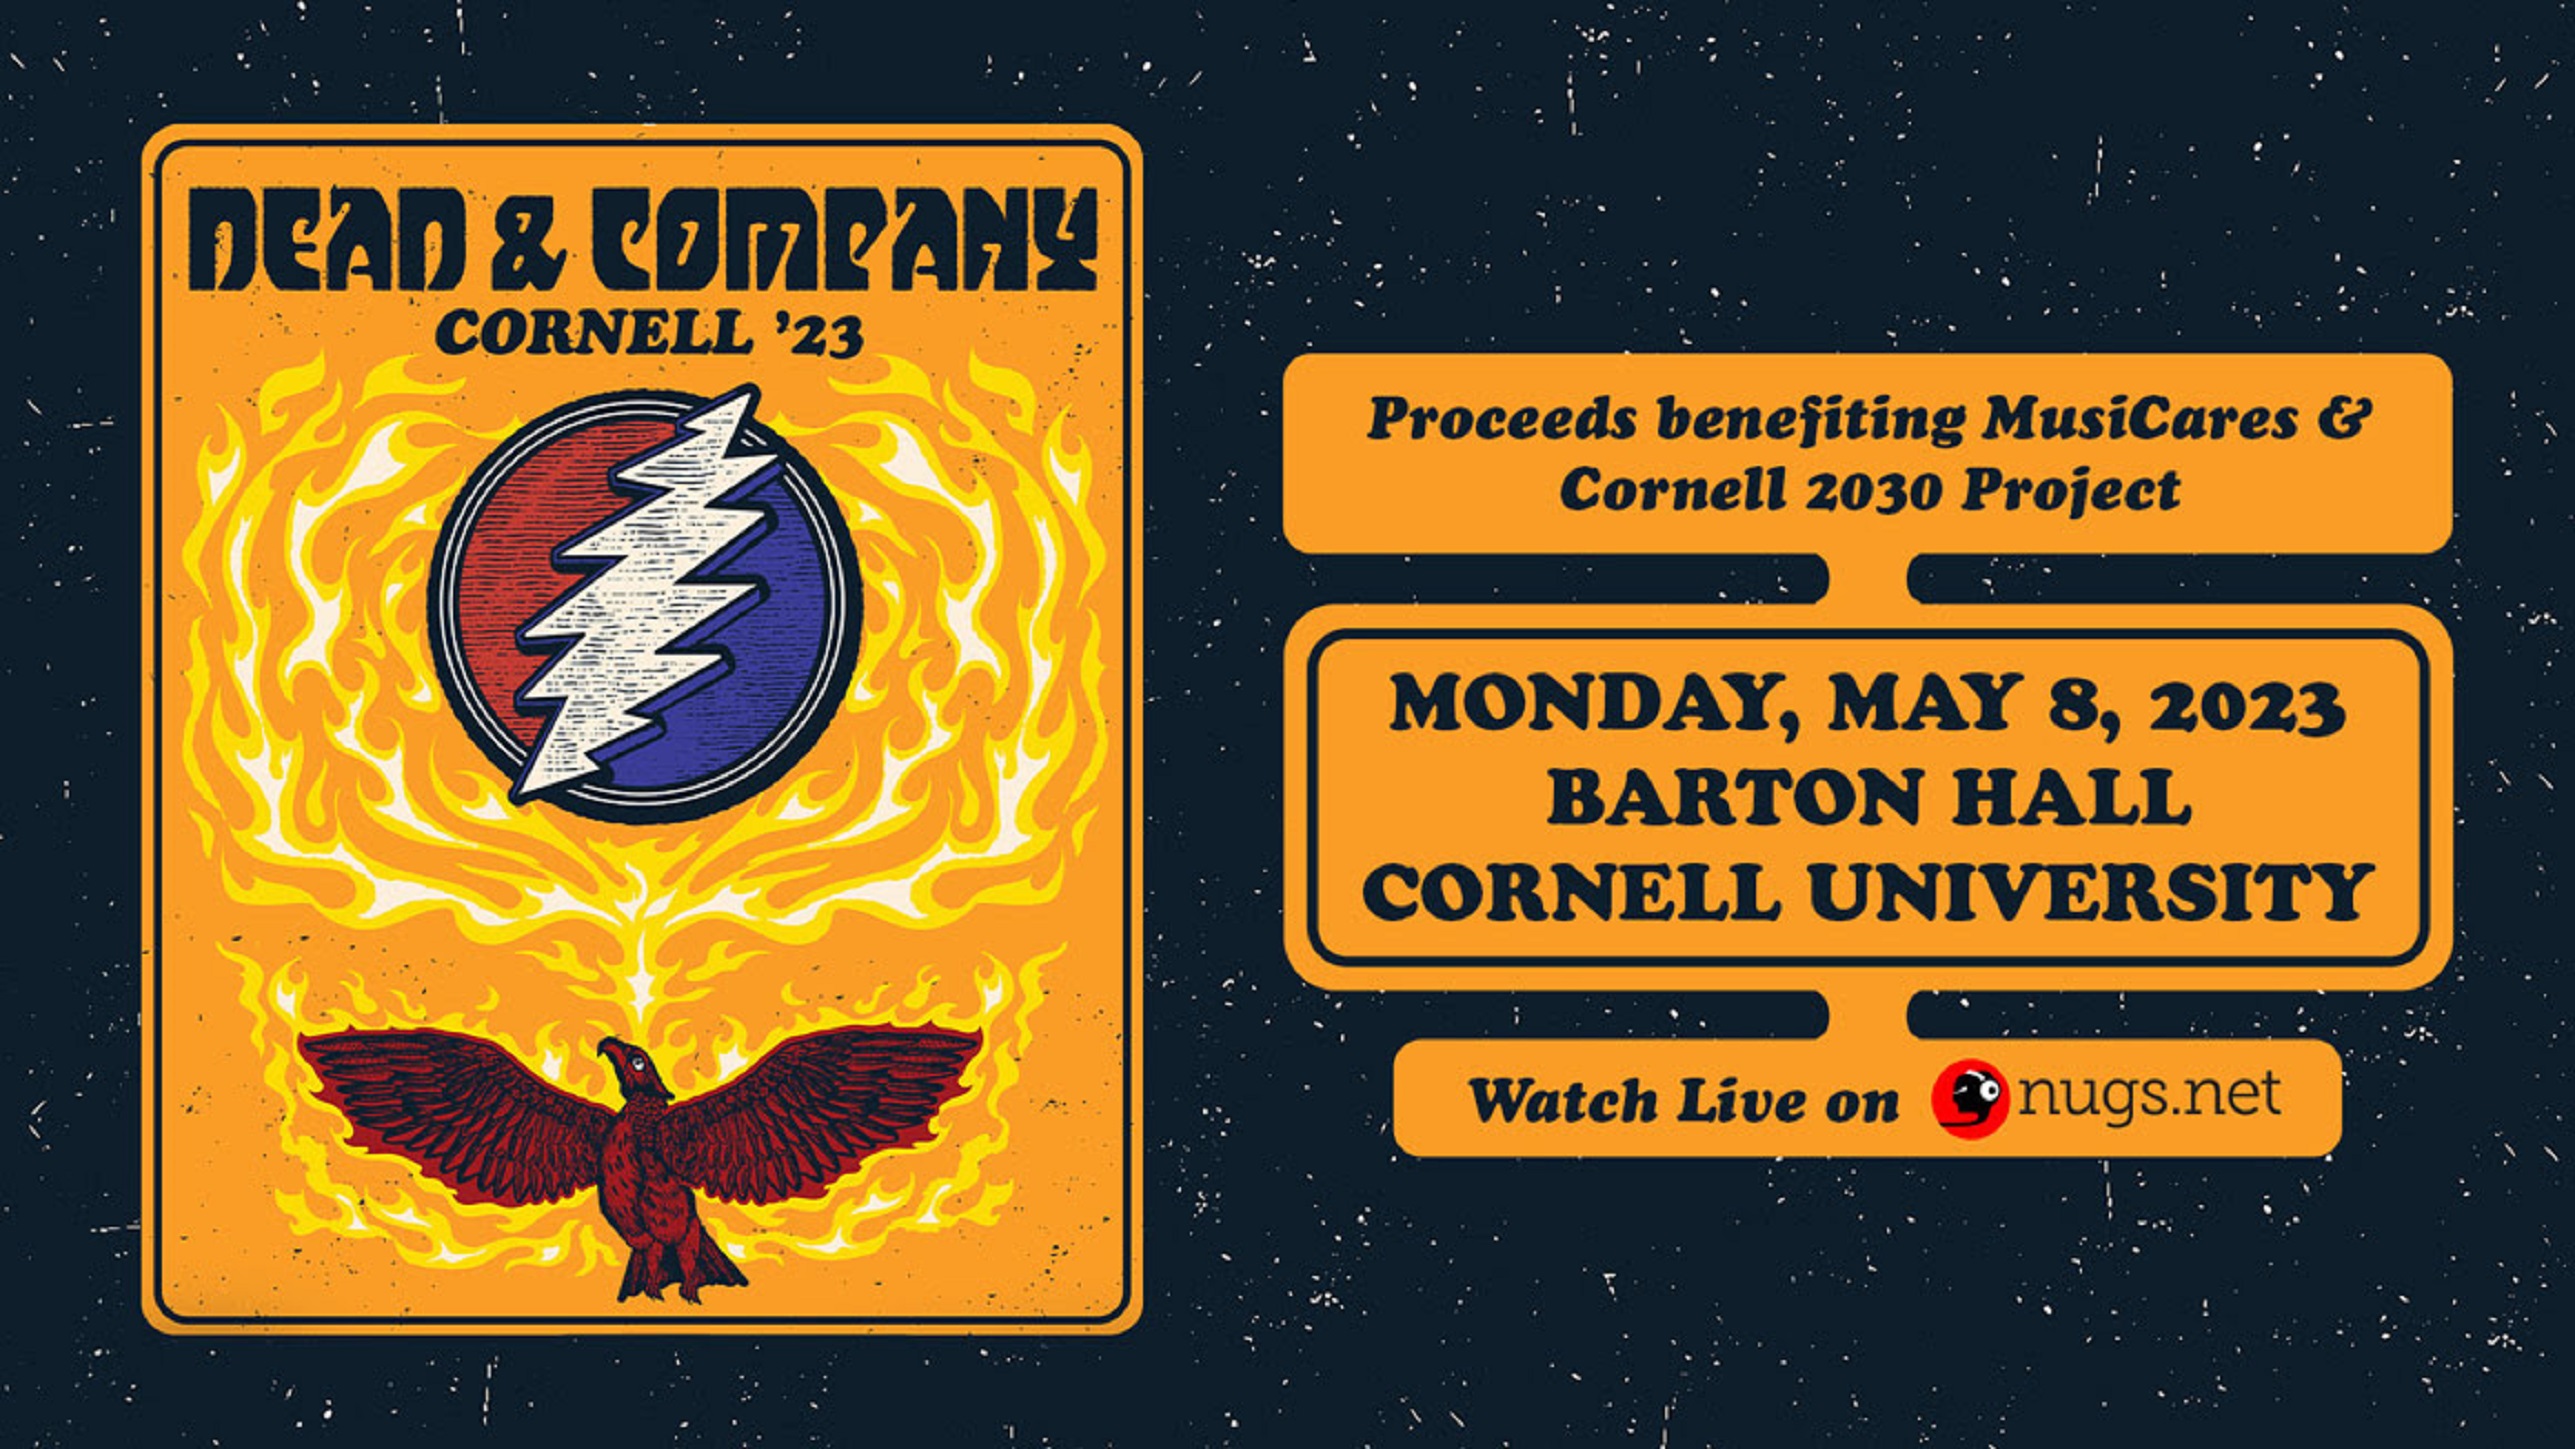 Tonight! Dead & Company at Cornell 5/8/23 Grateful Web